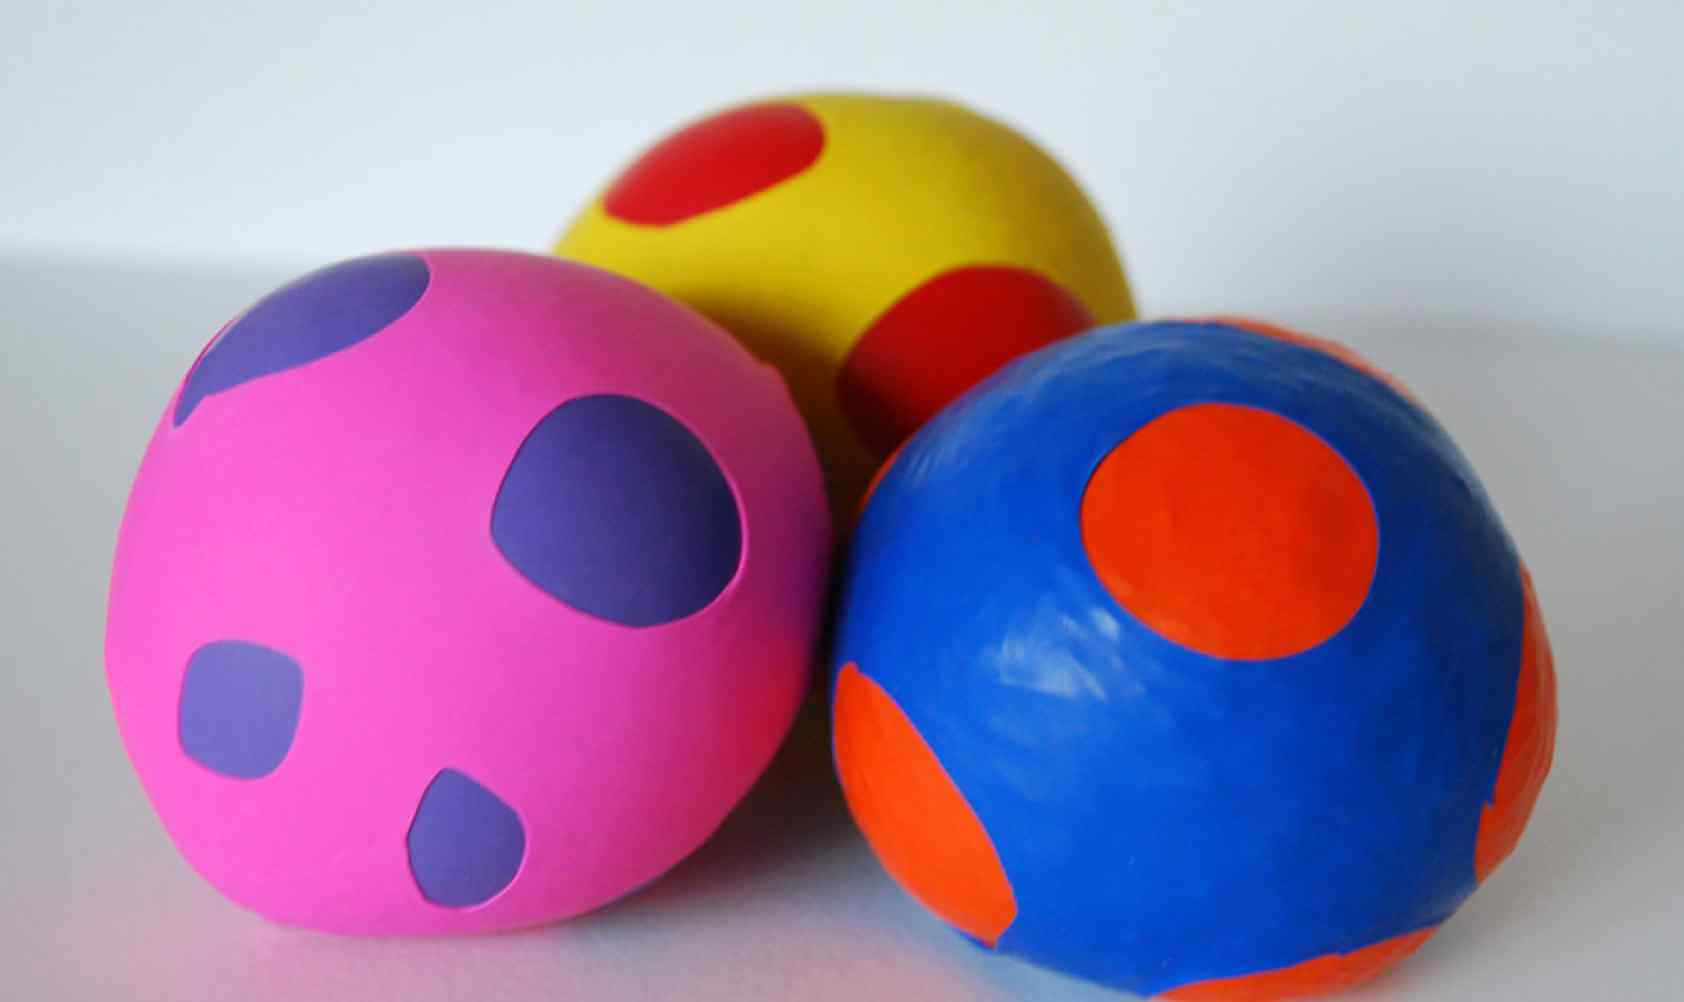 Maak jongleerballen van ballonnen